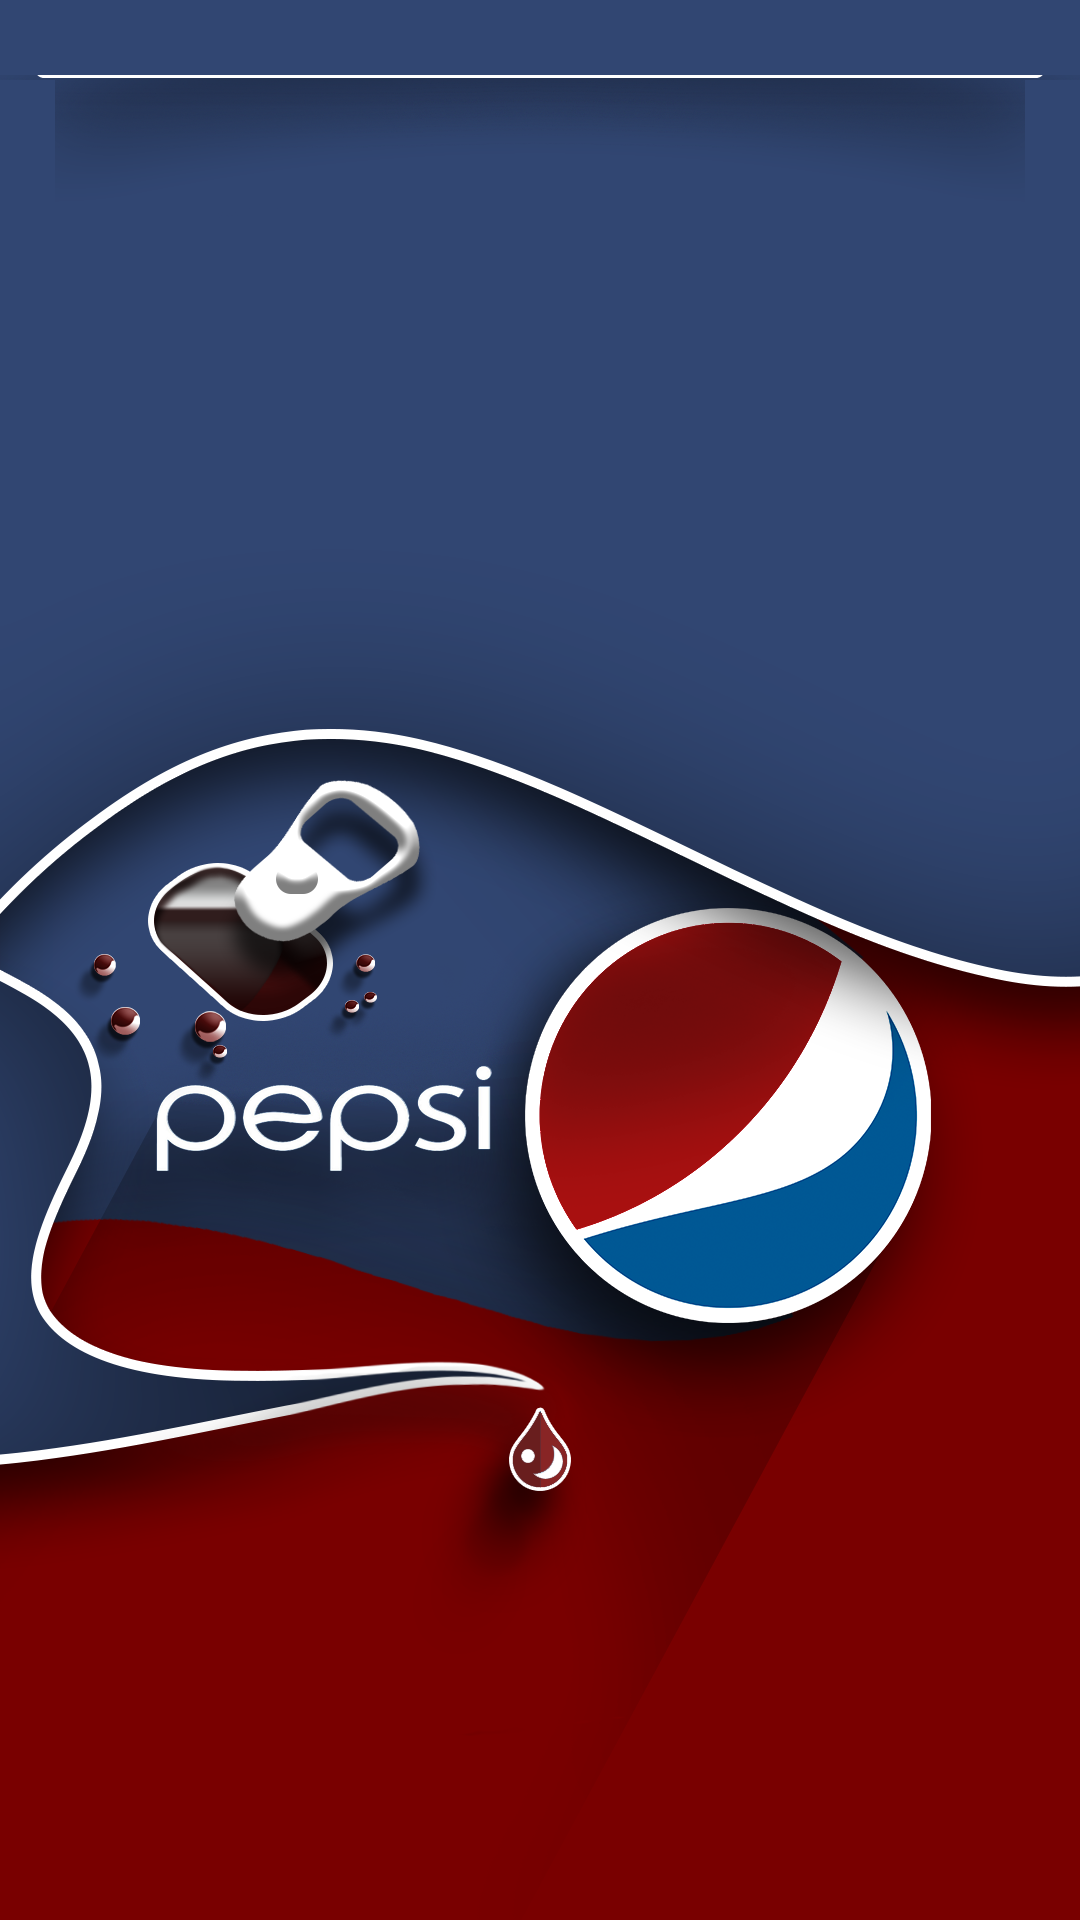 Pepsi Open Tab Wallpaper. Android wallpaper, Pepsi, Pepsi logo